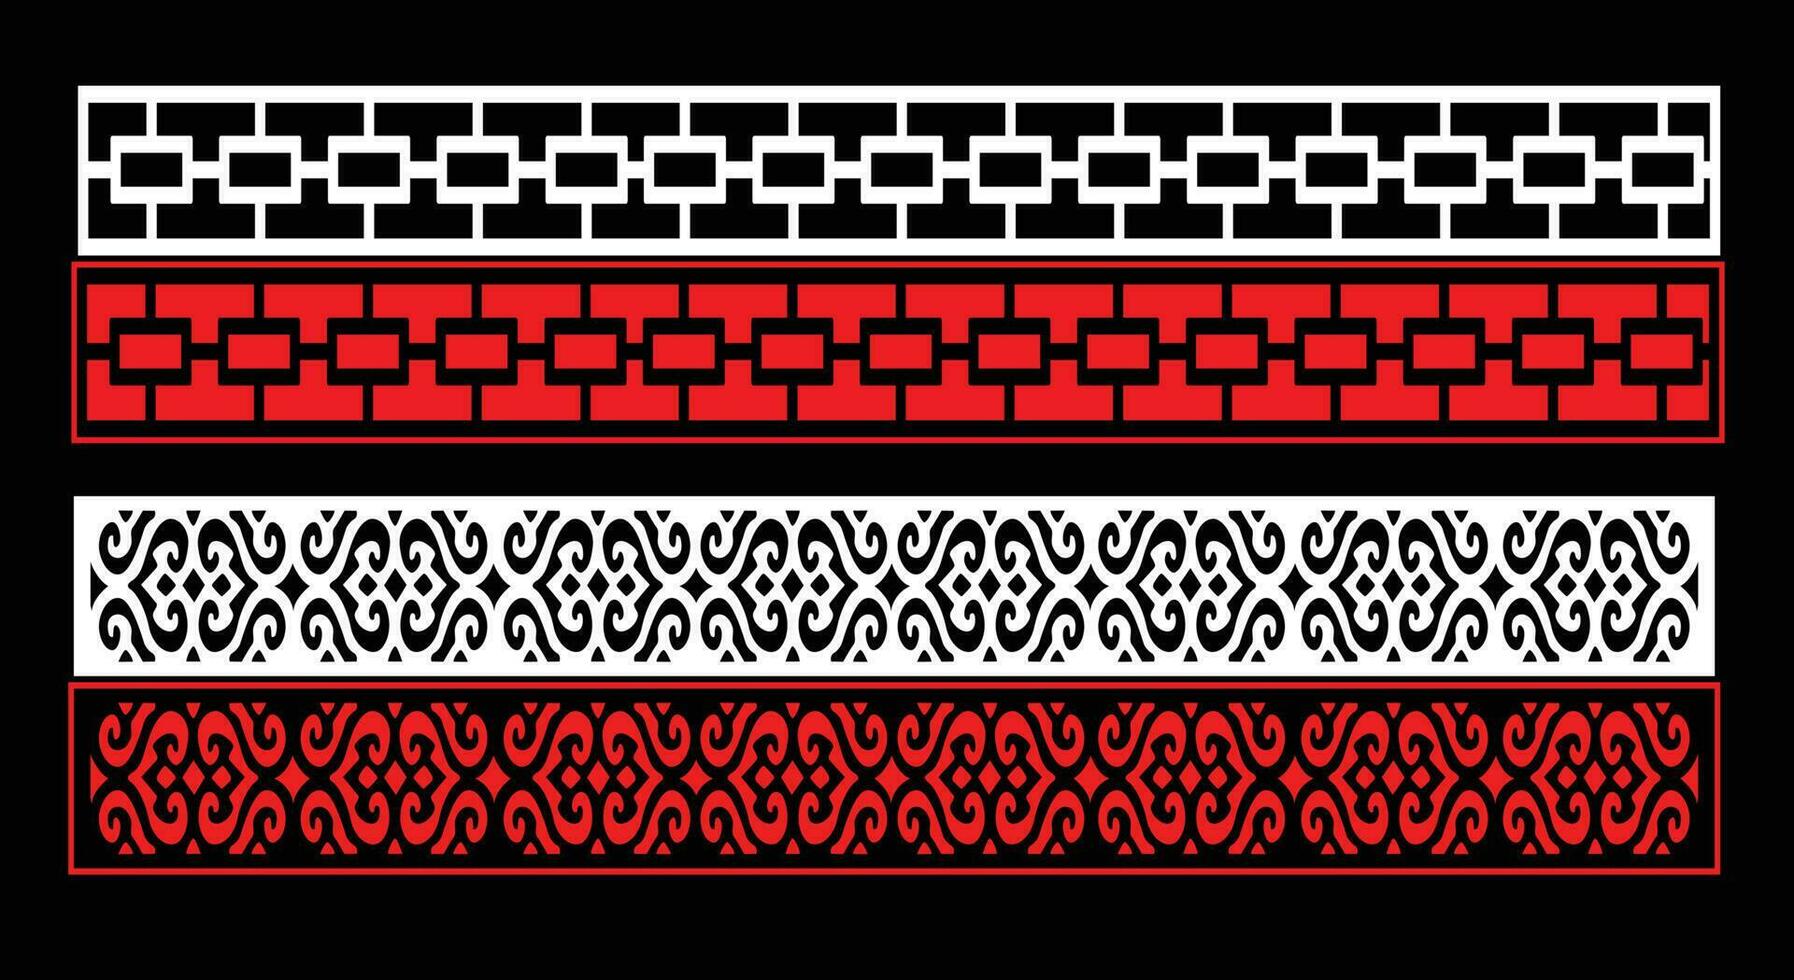 decoratief muur panelen reeks jali ontwerp cnc patroon, laser snijdend patroon, router cnccutting.jali laser besnoeiing decoratief paneel reeks met kant patroon. vector